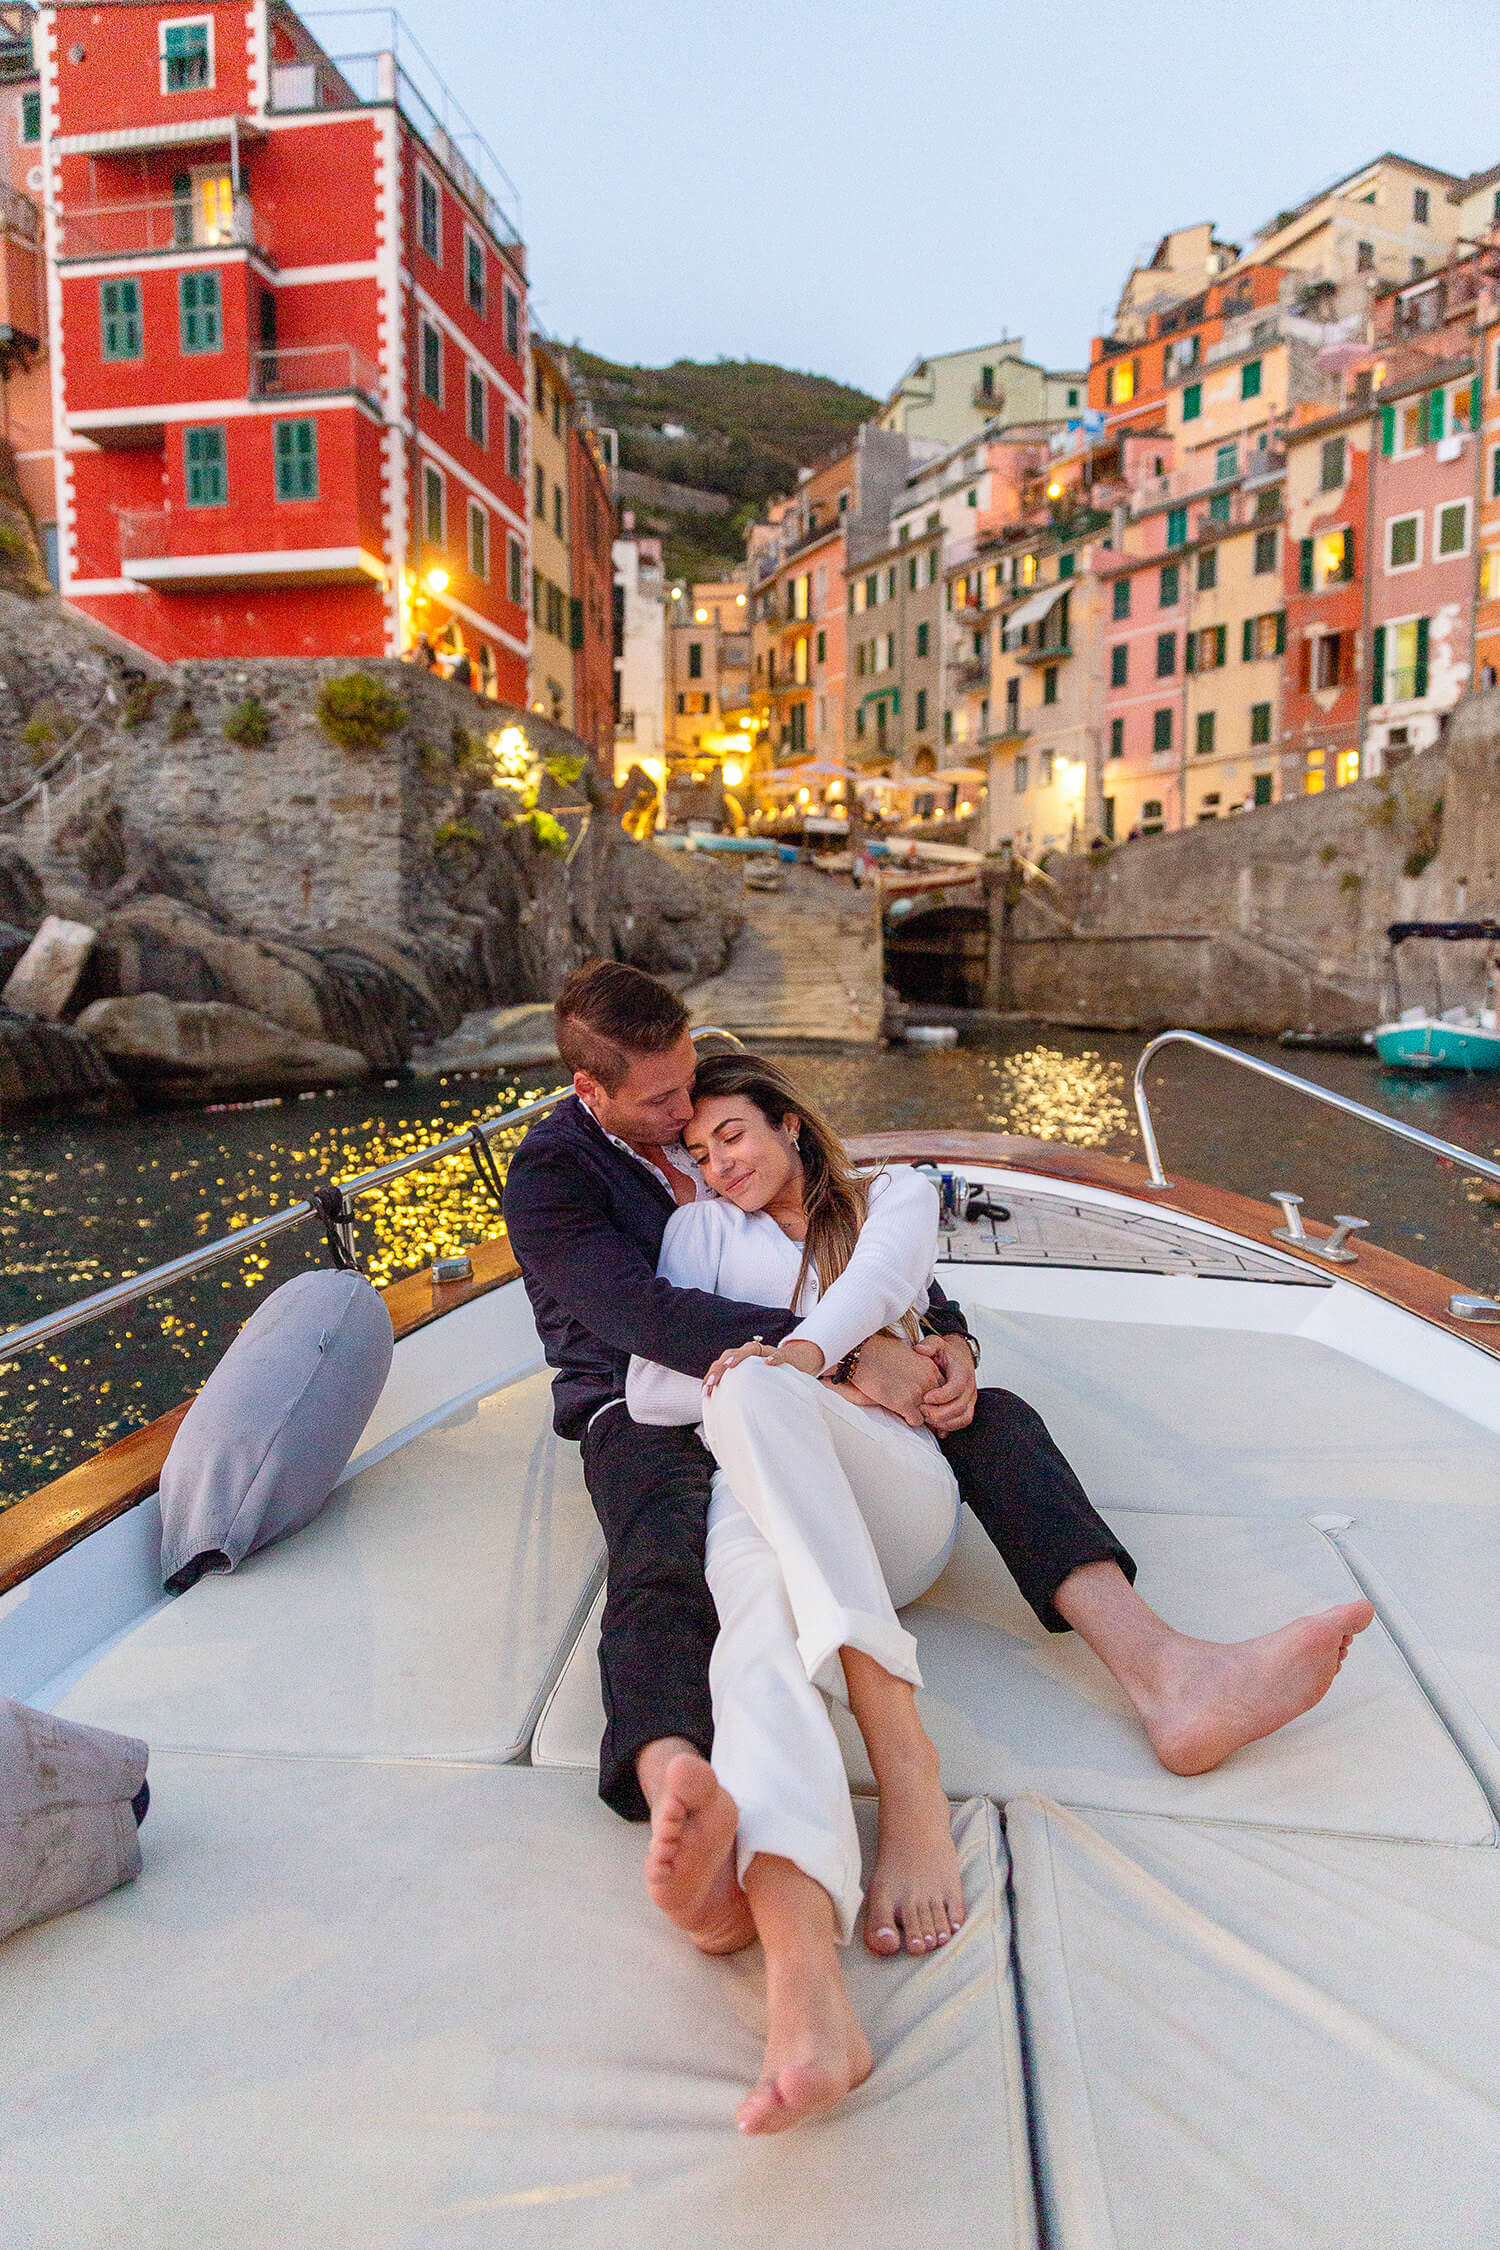 Couple hugging on a boat in Riomaggiore, Cinque Terre